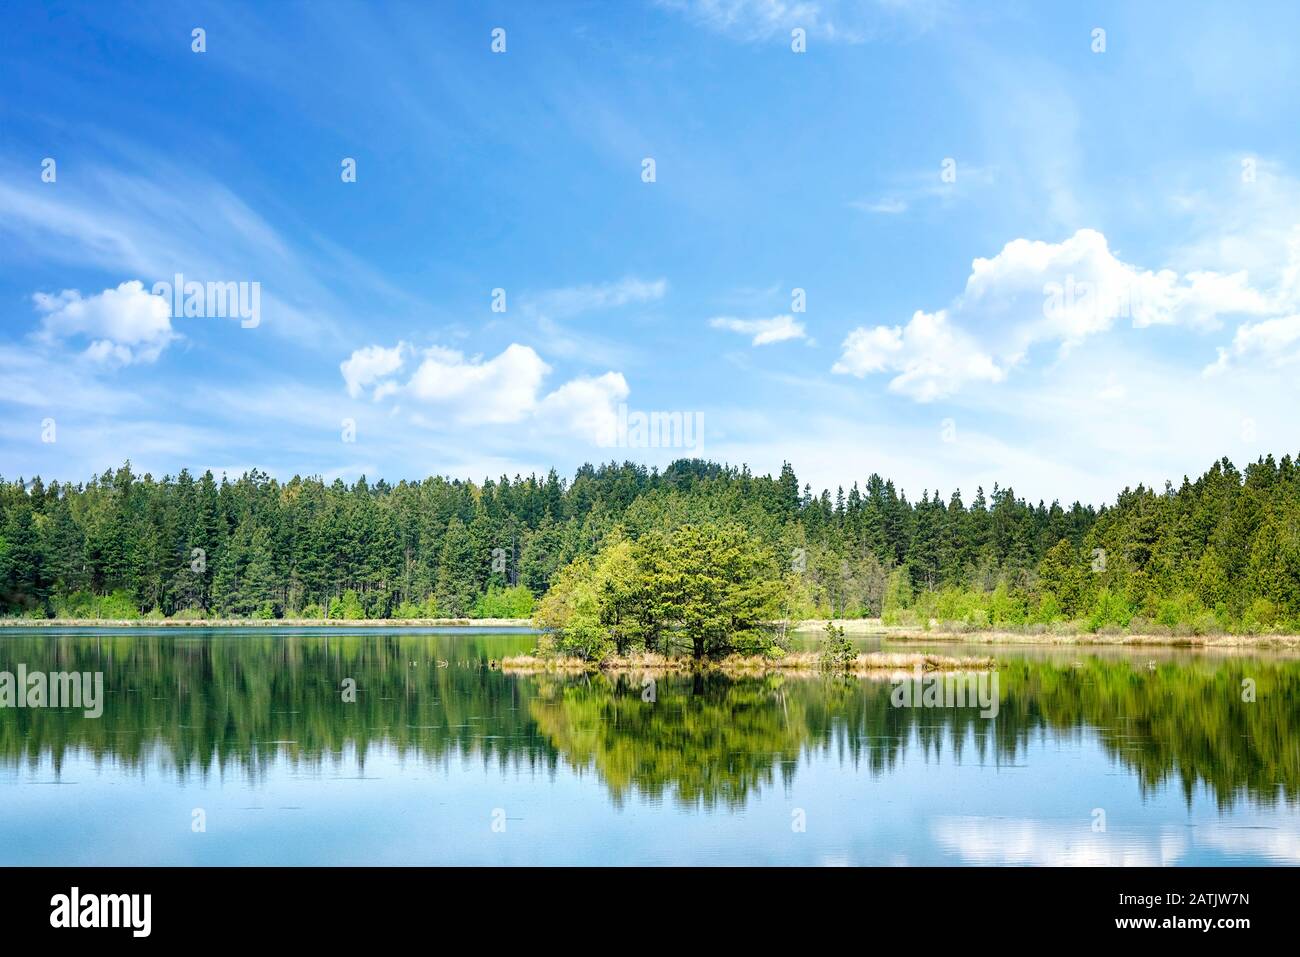 Paysage de lac coloré avec des reflets d'arbres dans l'eau et avec une petite île au milieu Banque D'Images